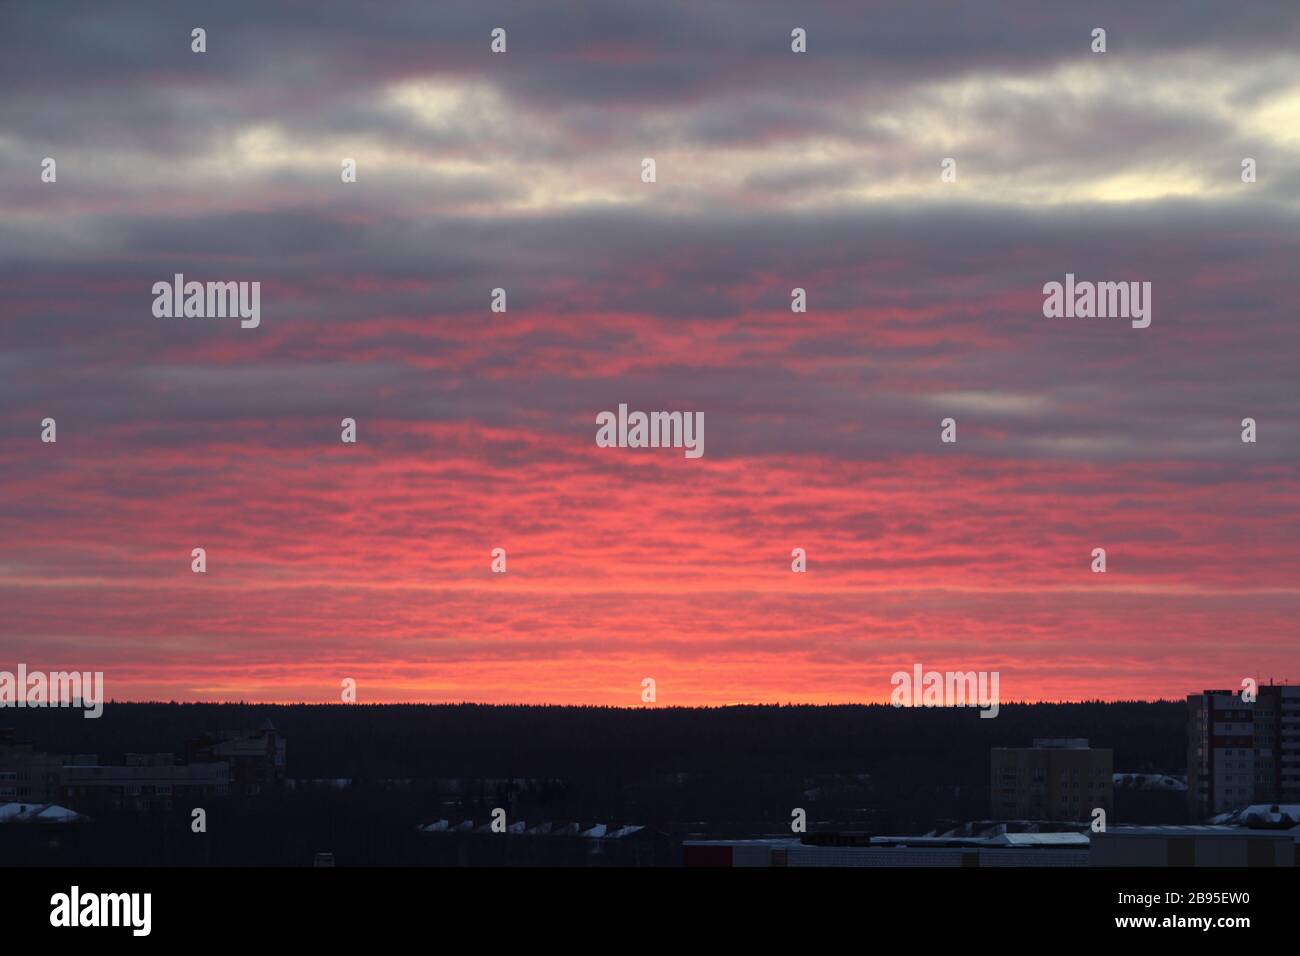 Tramonto a scarlatto o alba sull'orizzonte. Nuvole rosa illuminate dal sole sull'orizzonte. Foto Stock